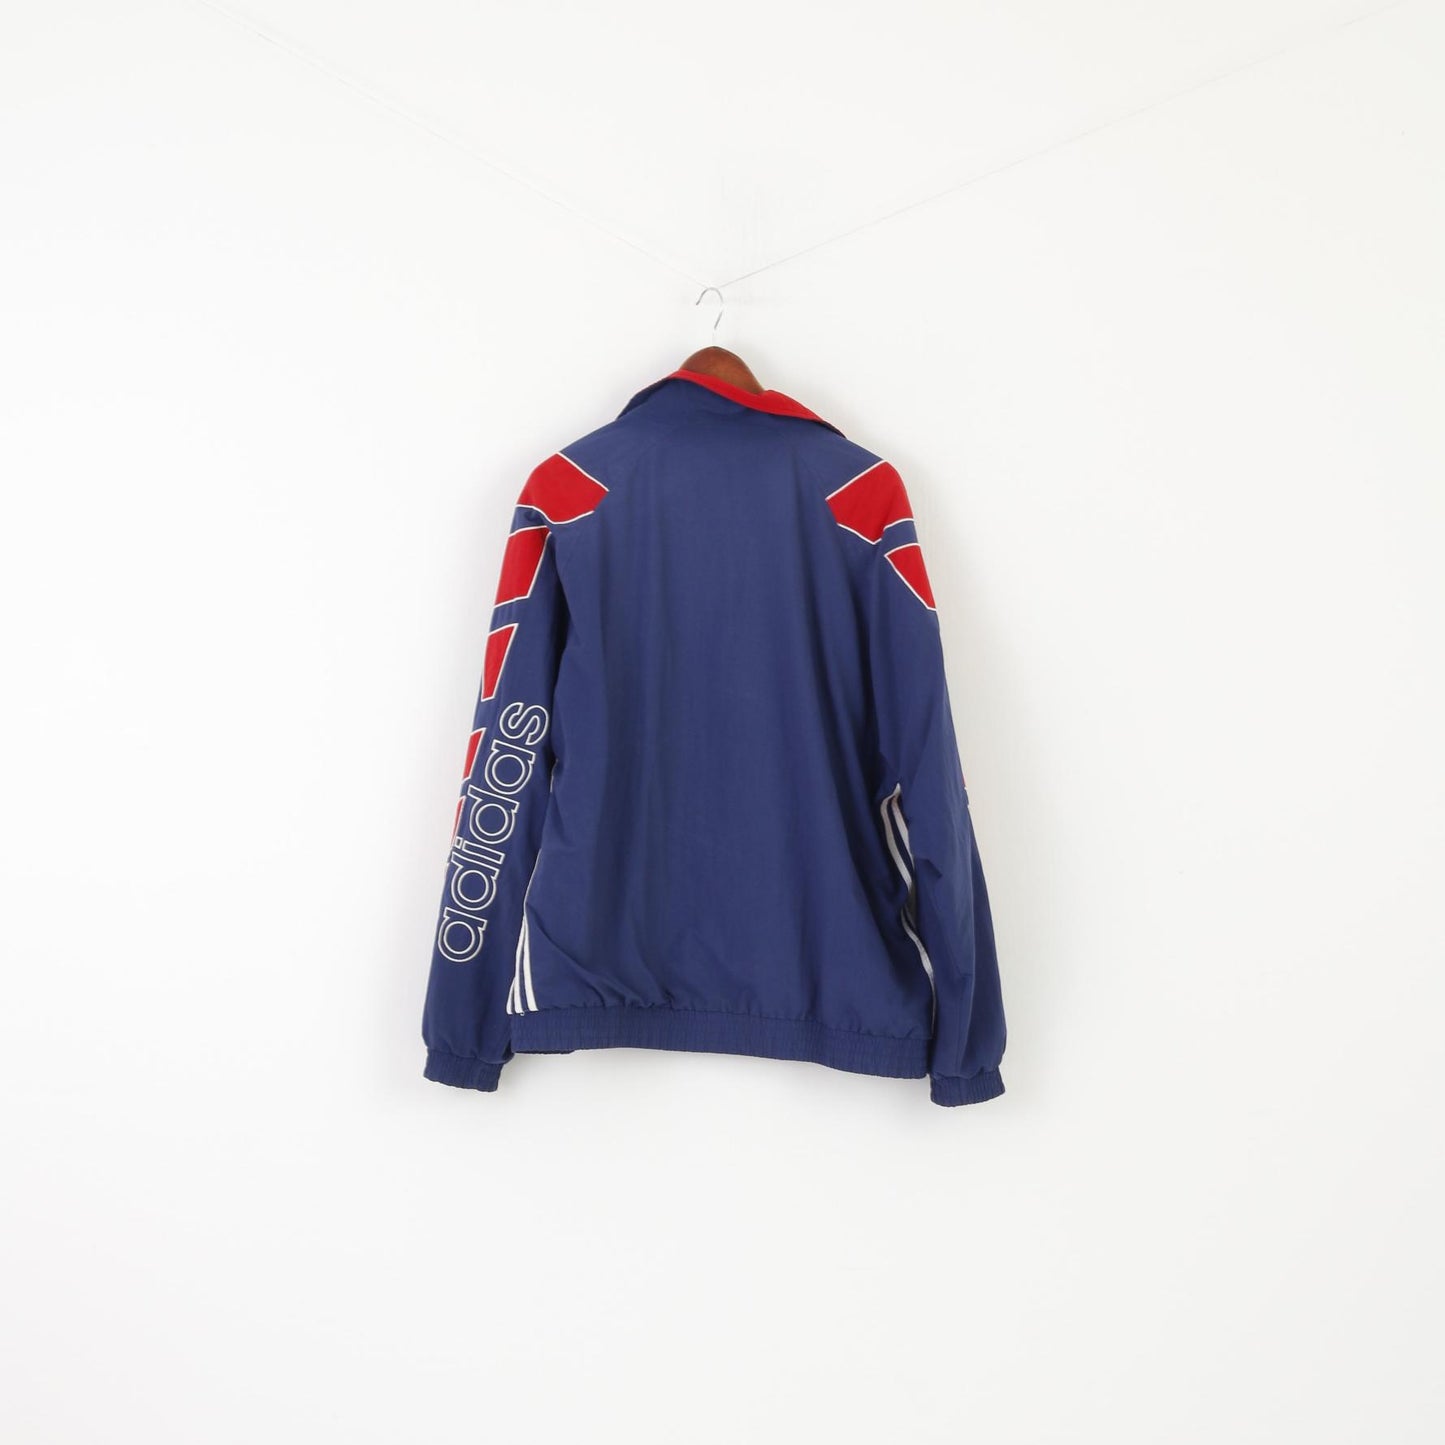 Adidas Men XL Jacket Red Navy Vintage 90s Bomber Zip Up Activewear Top